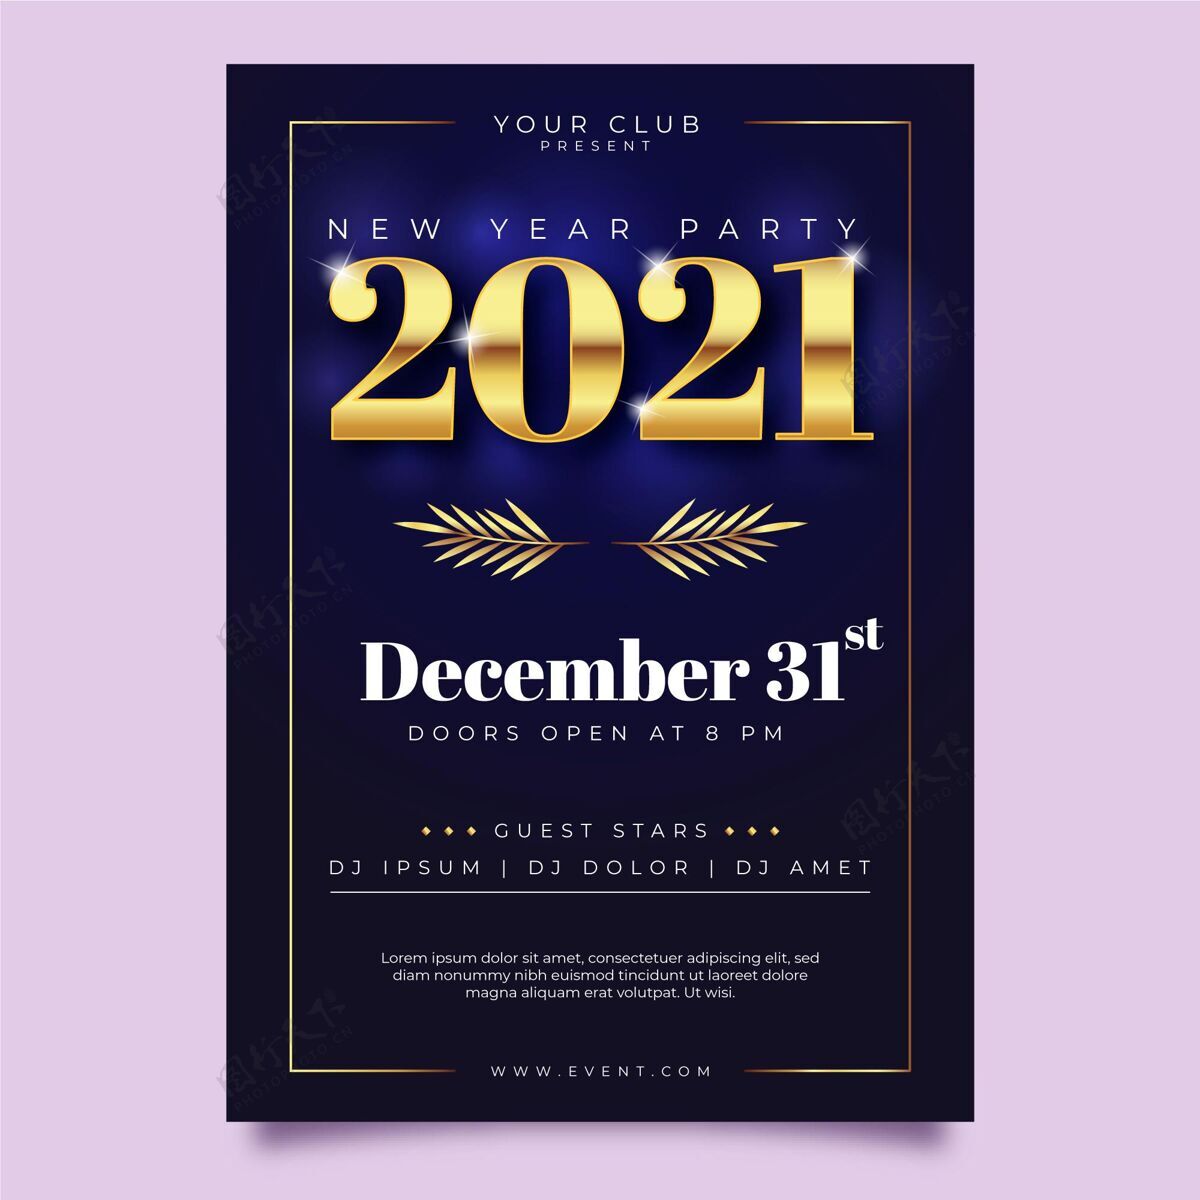 夏娃2021新年派对海报模板聚会海报庆祝